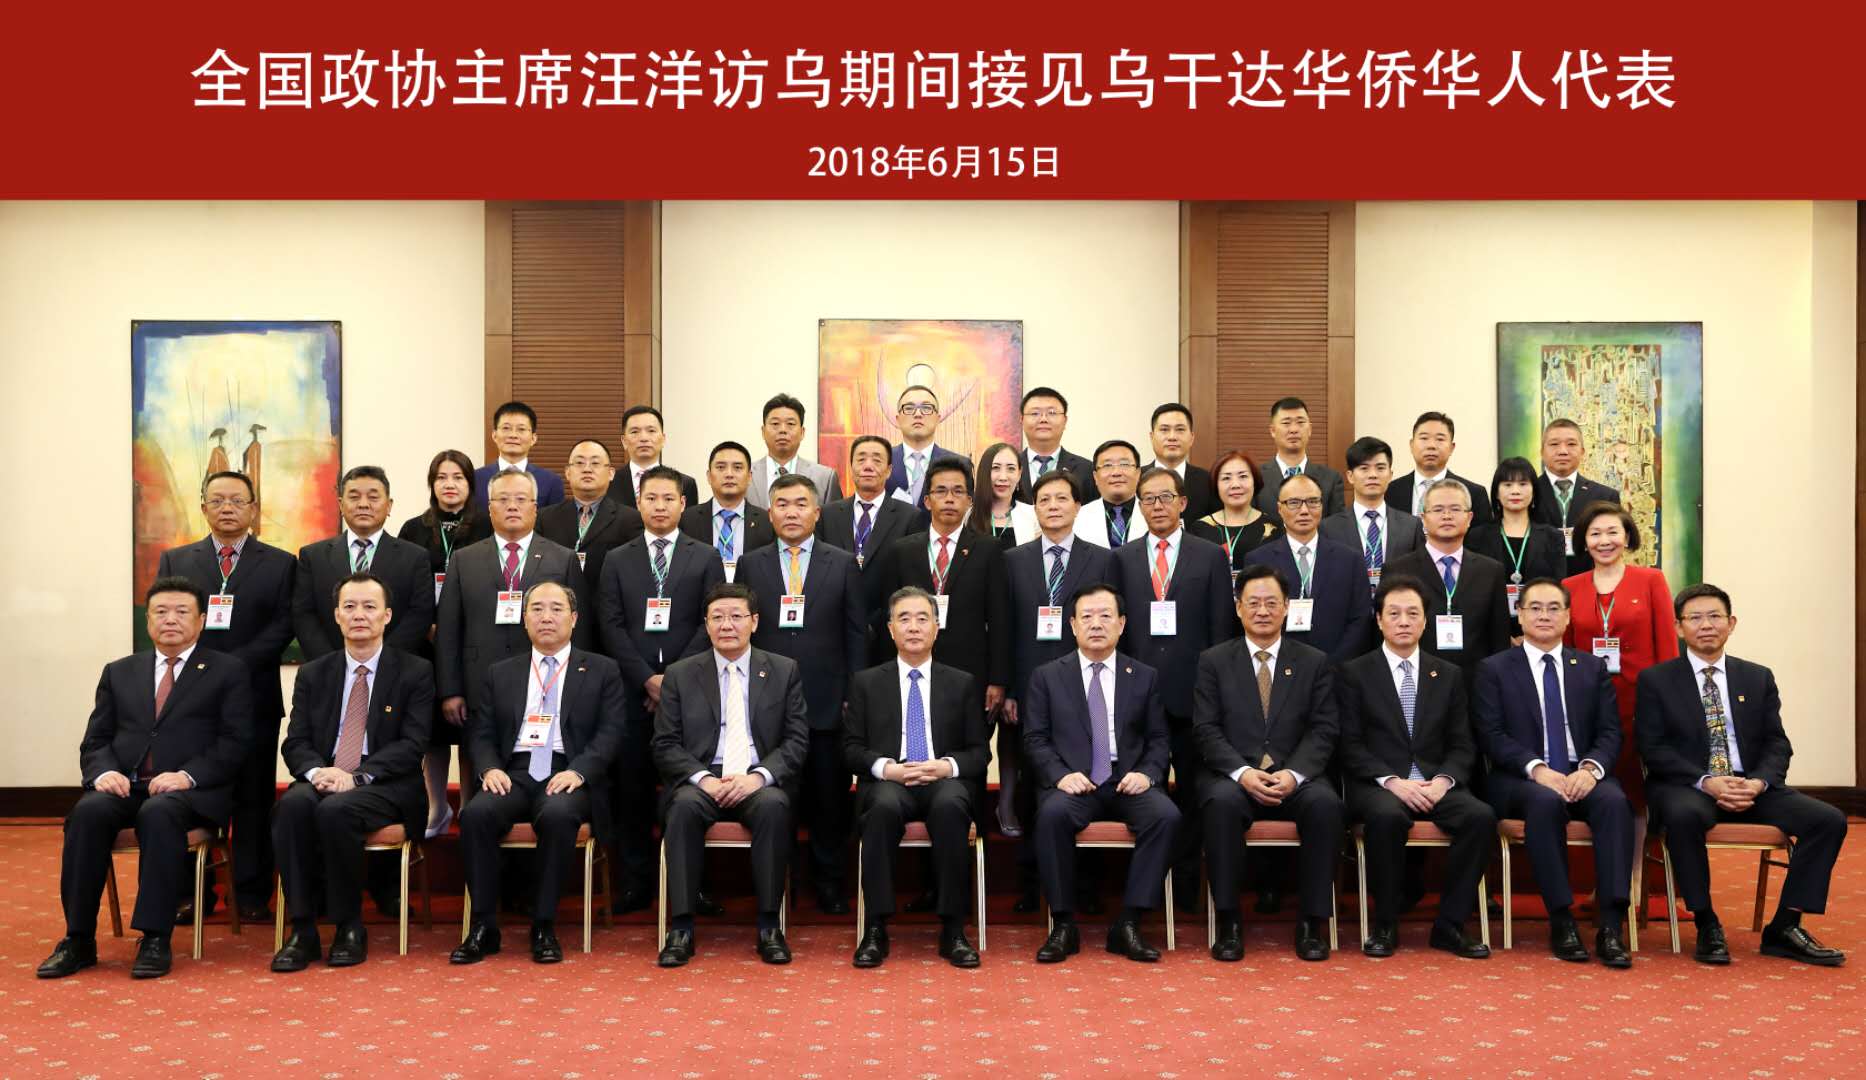 2018年政协主席汪洋访问乌干达期间接见董事长及其他华侨华人代表